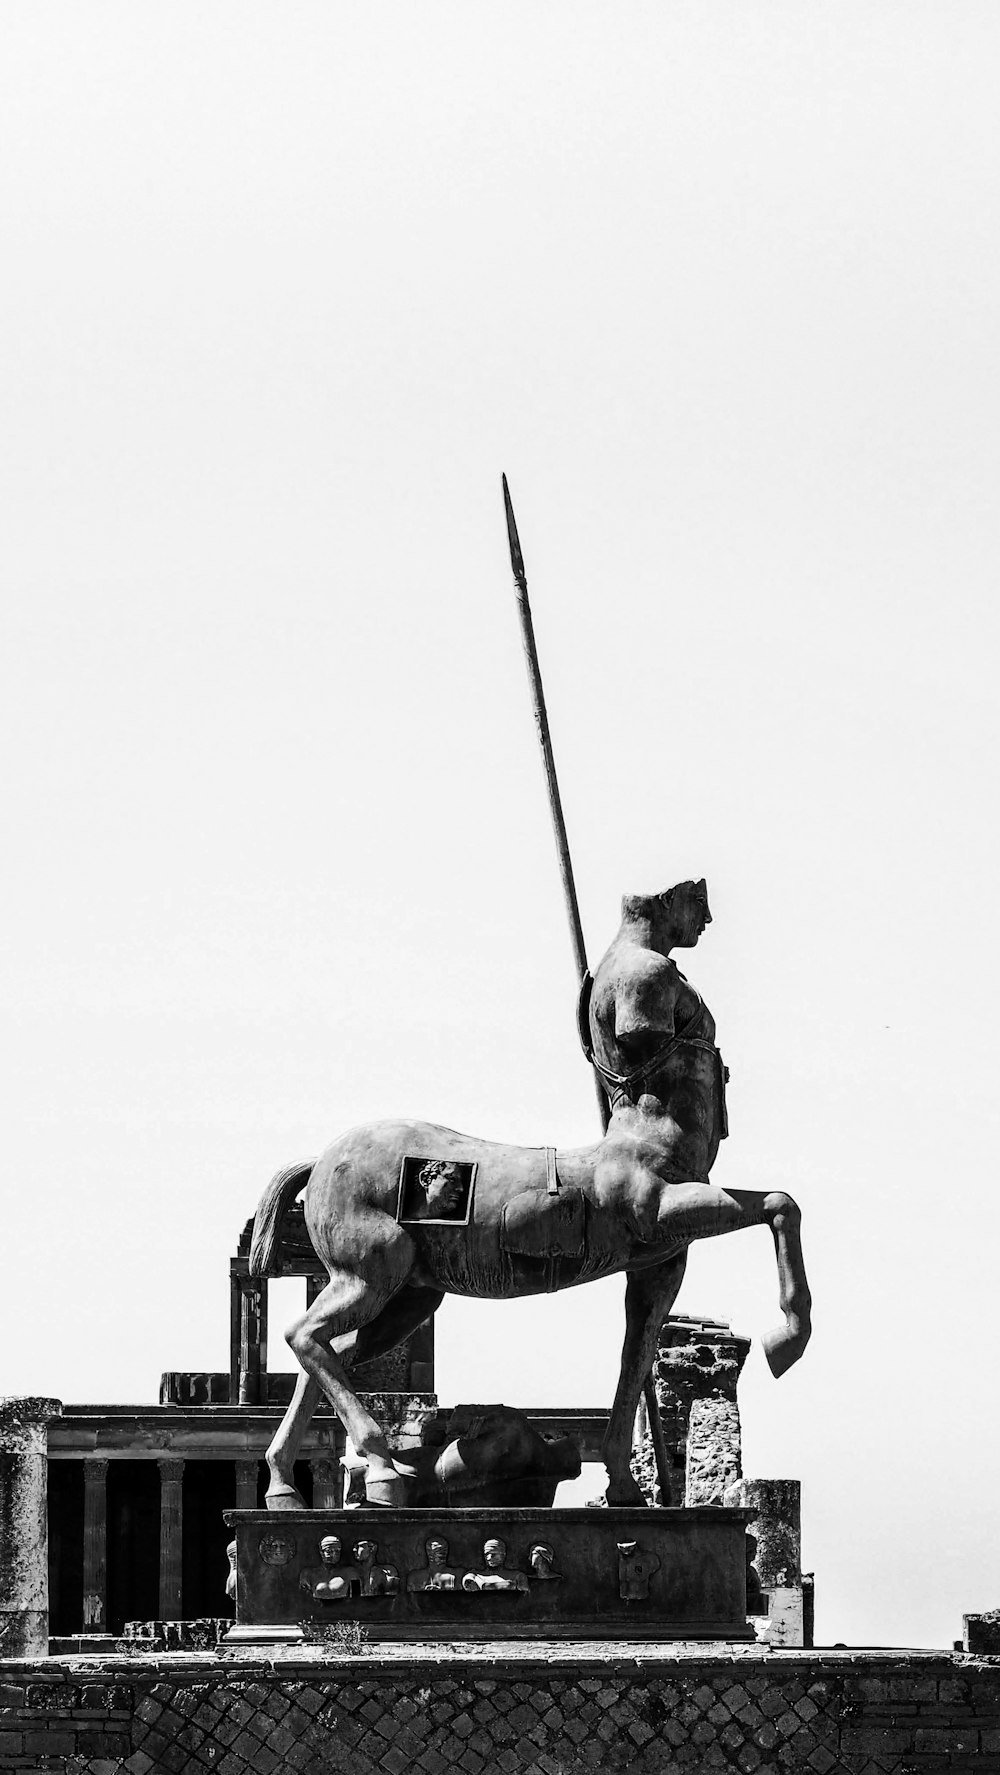 hombre montando en estatua de caballo